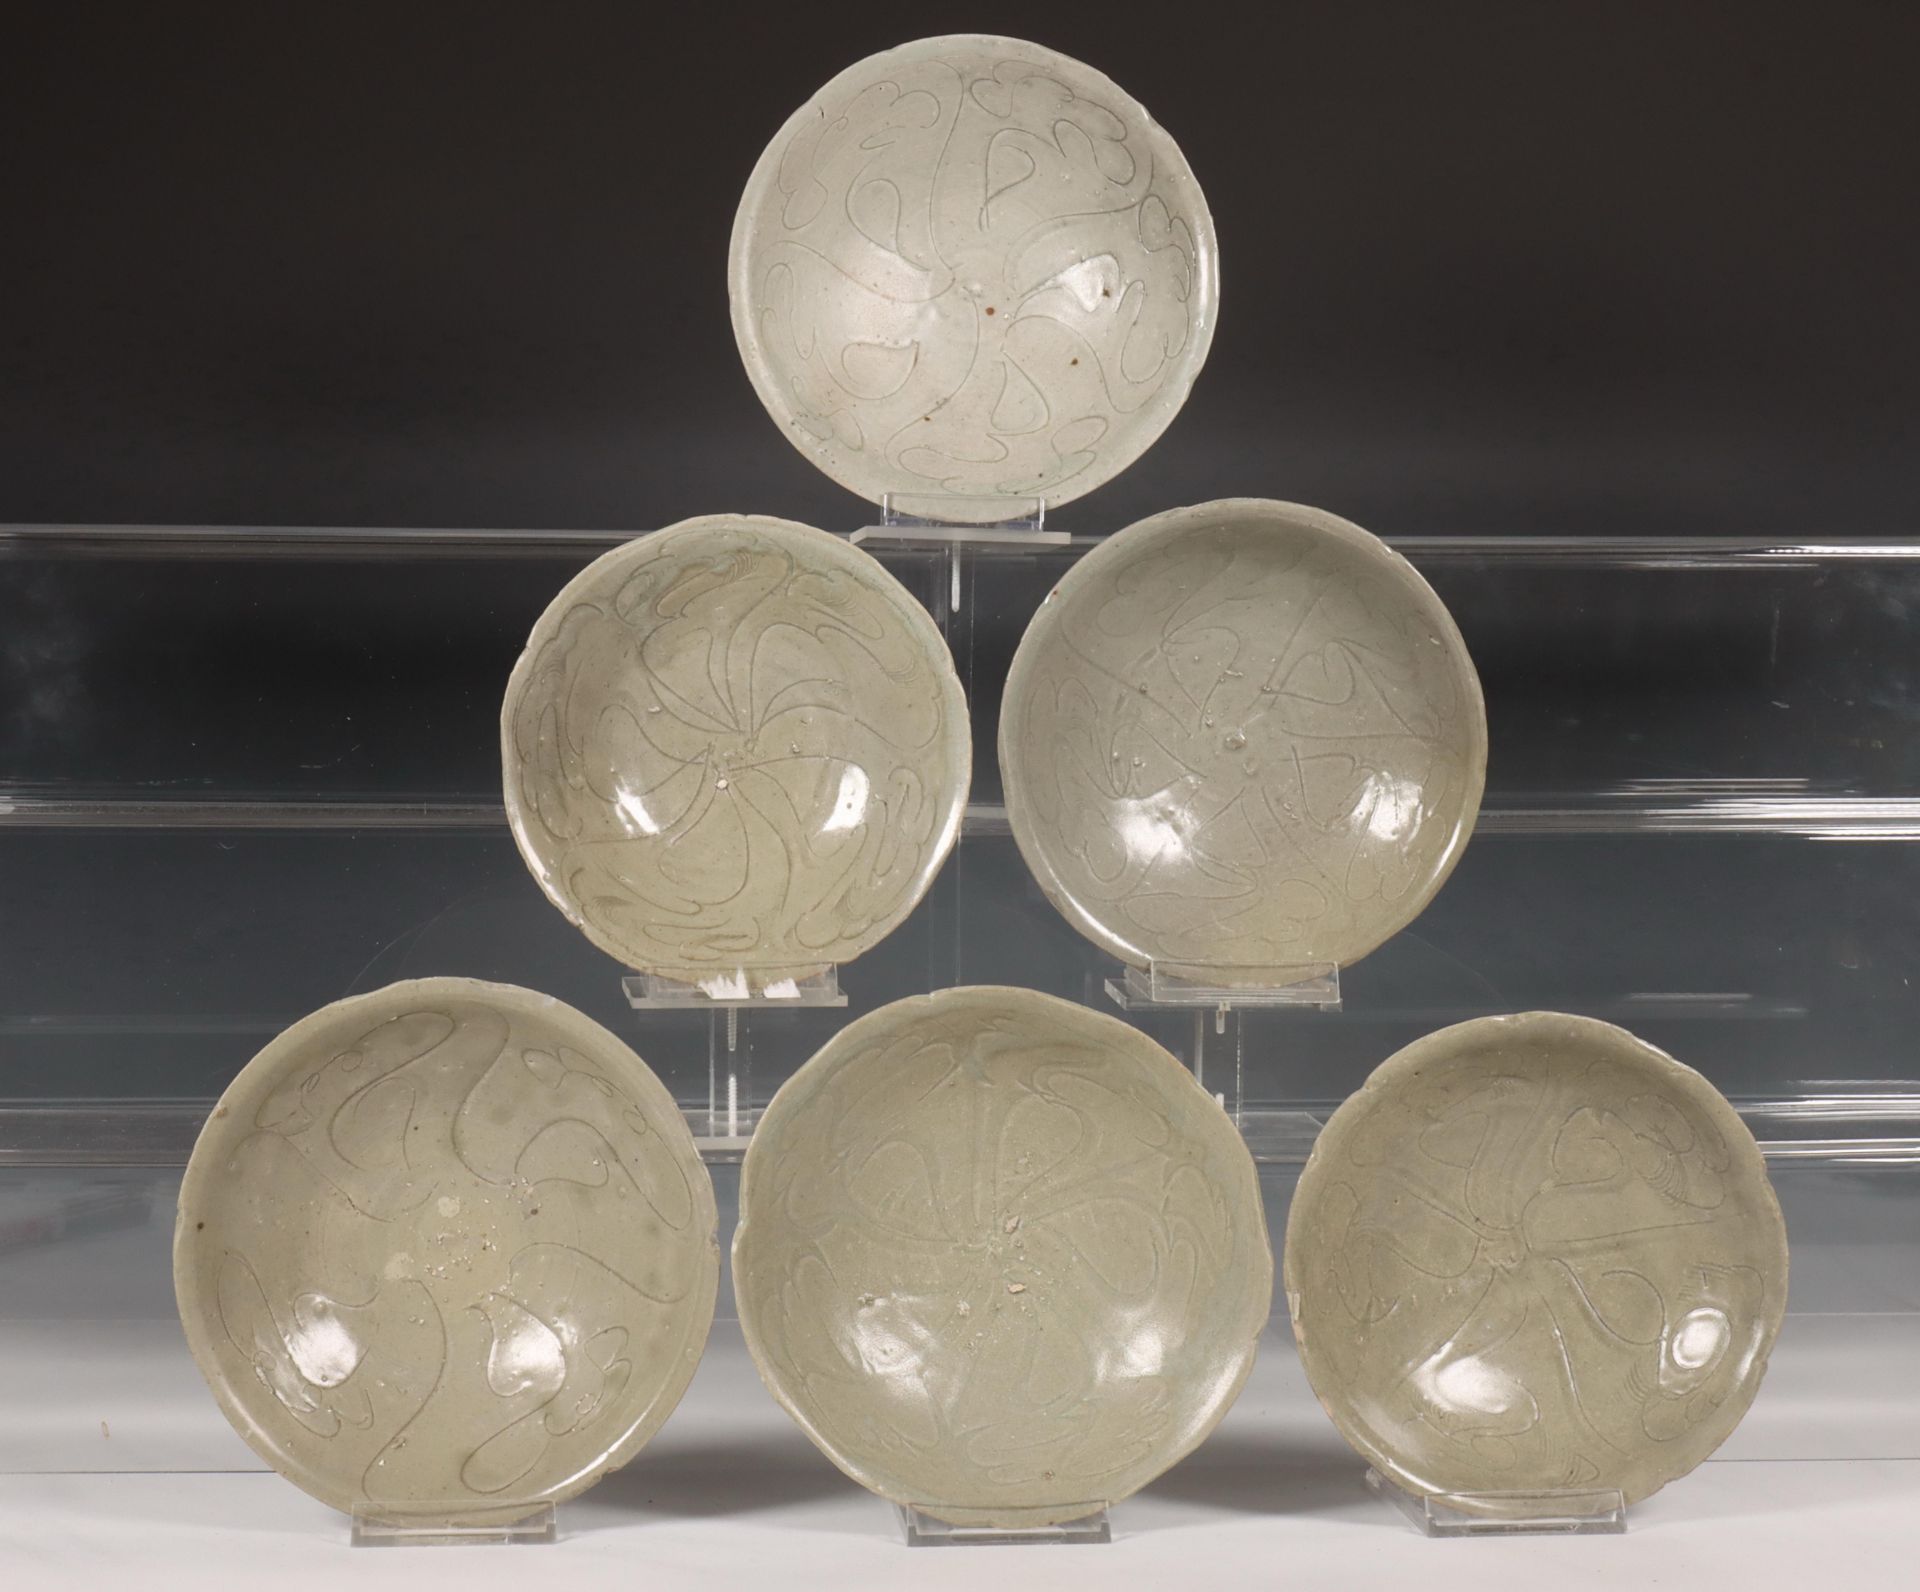 China, zes celadon geglazuurde porseleinen kommen, Noordelijke Song-dynastie, 10e-12e eeuw,